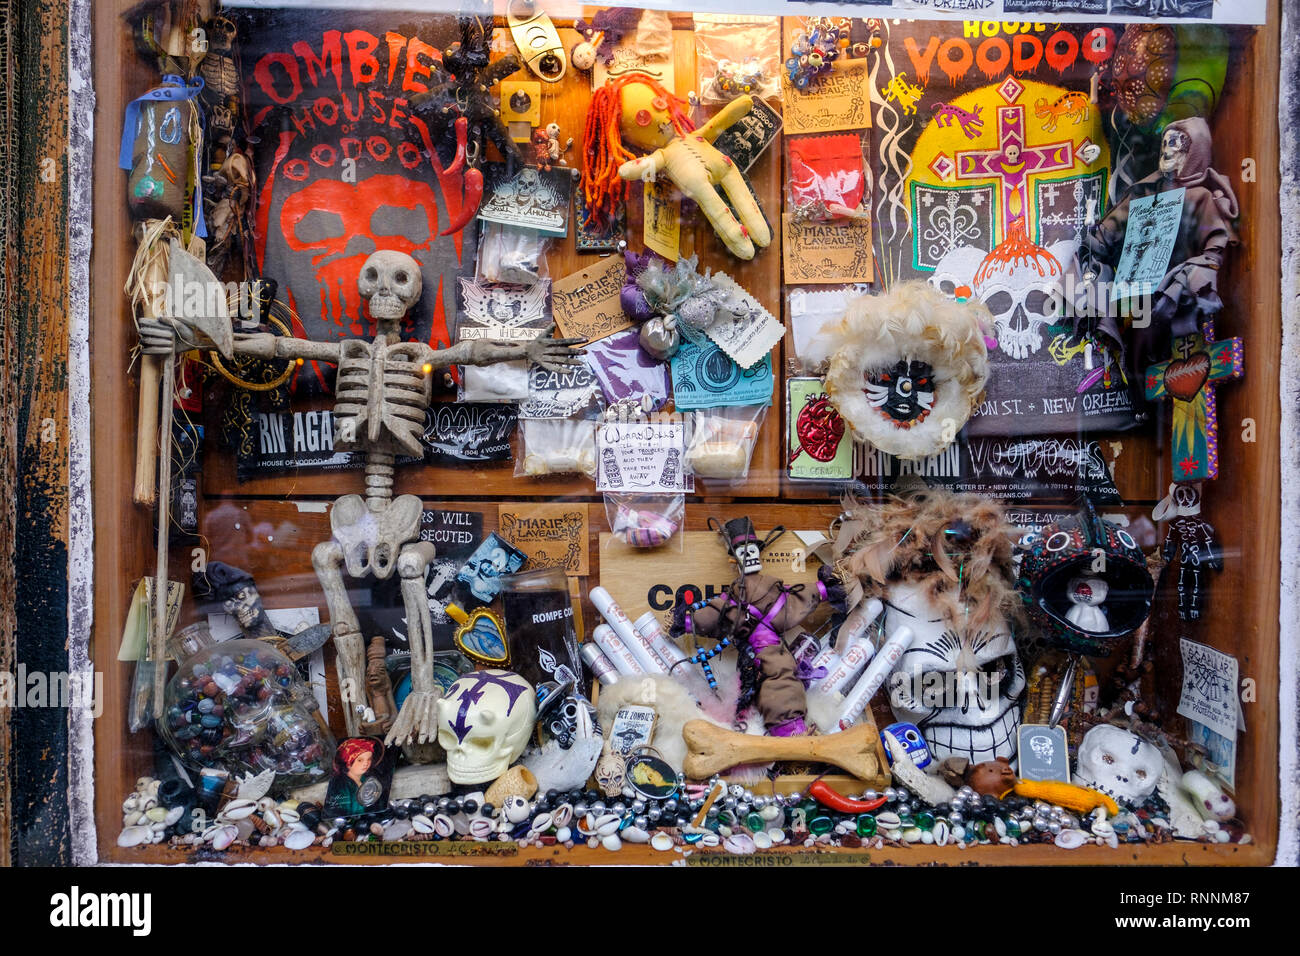 Il reverendo Zombie Casa di Voodoo store window, voodoo dolls, oggetti religiosi, New Orleans French Quarter di New Orleans, in Louisiana, Stati Uniti d'America Foto Stock